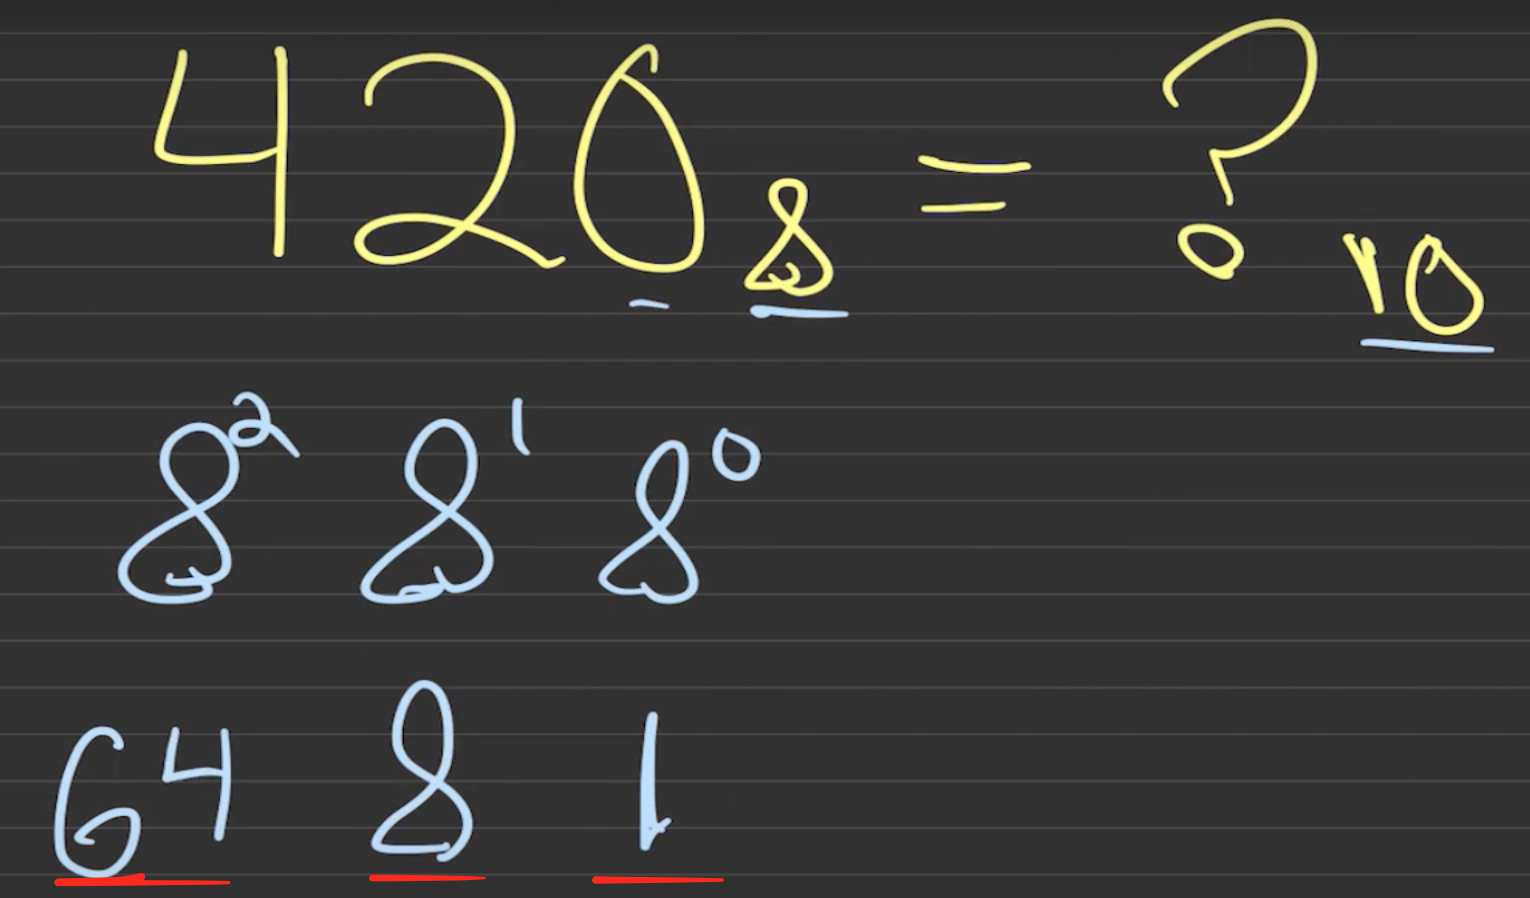 Para convertir de octal a decimal ahora sólo hay que calcular las potencias de 8